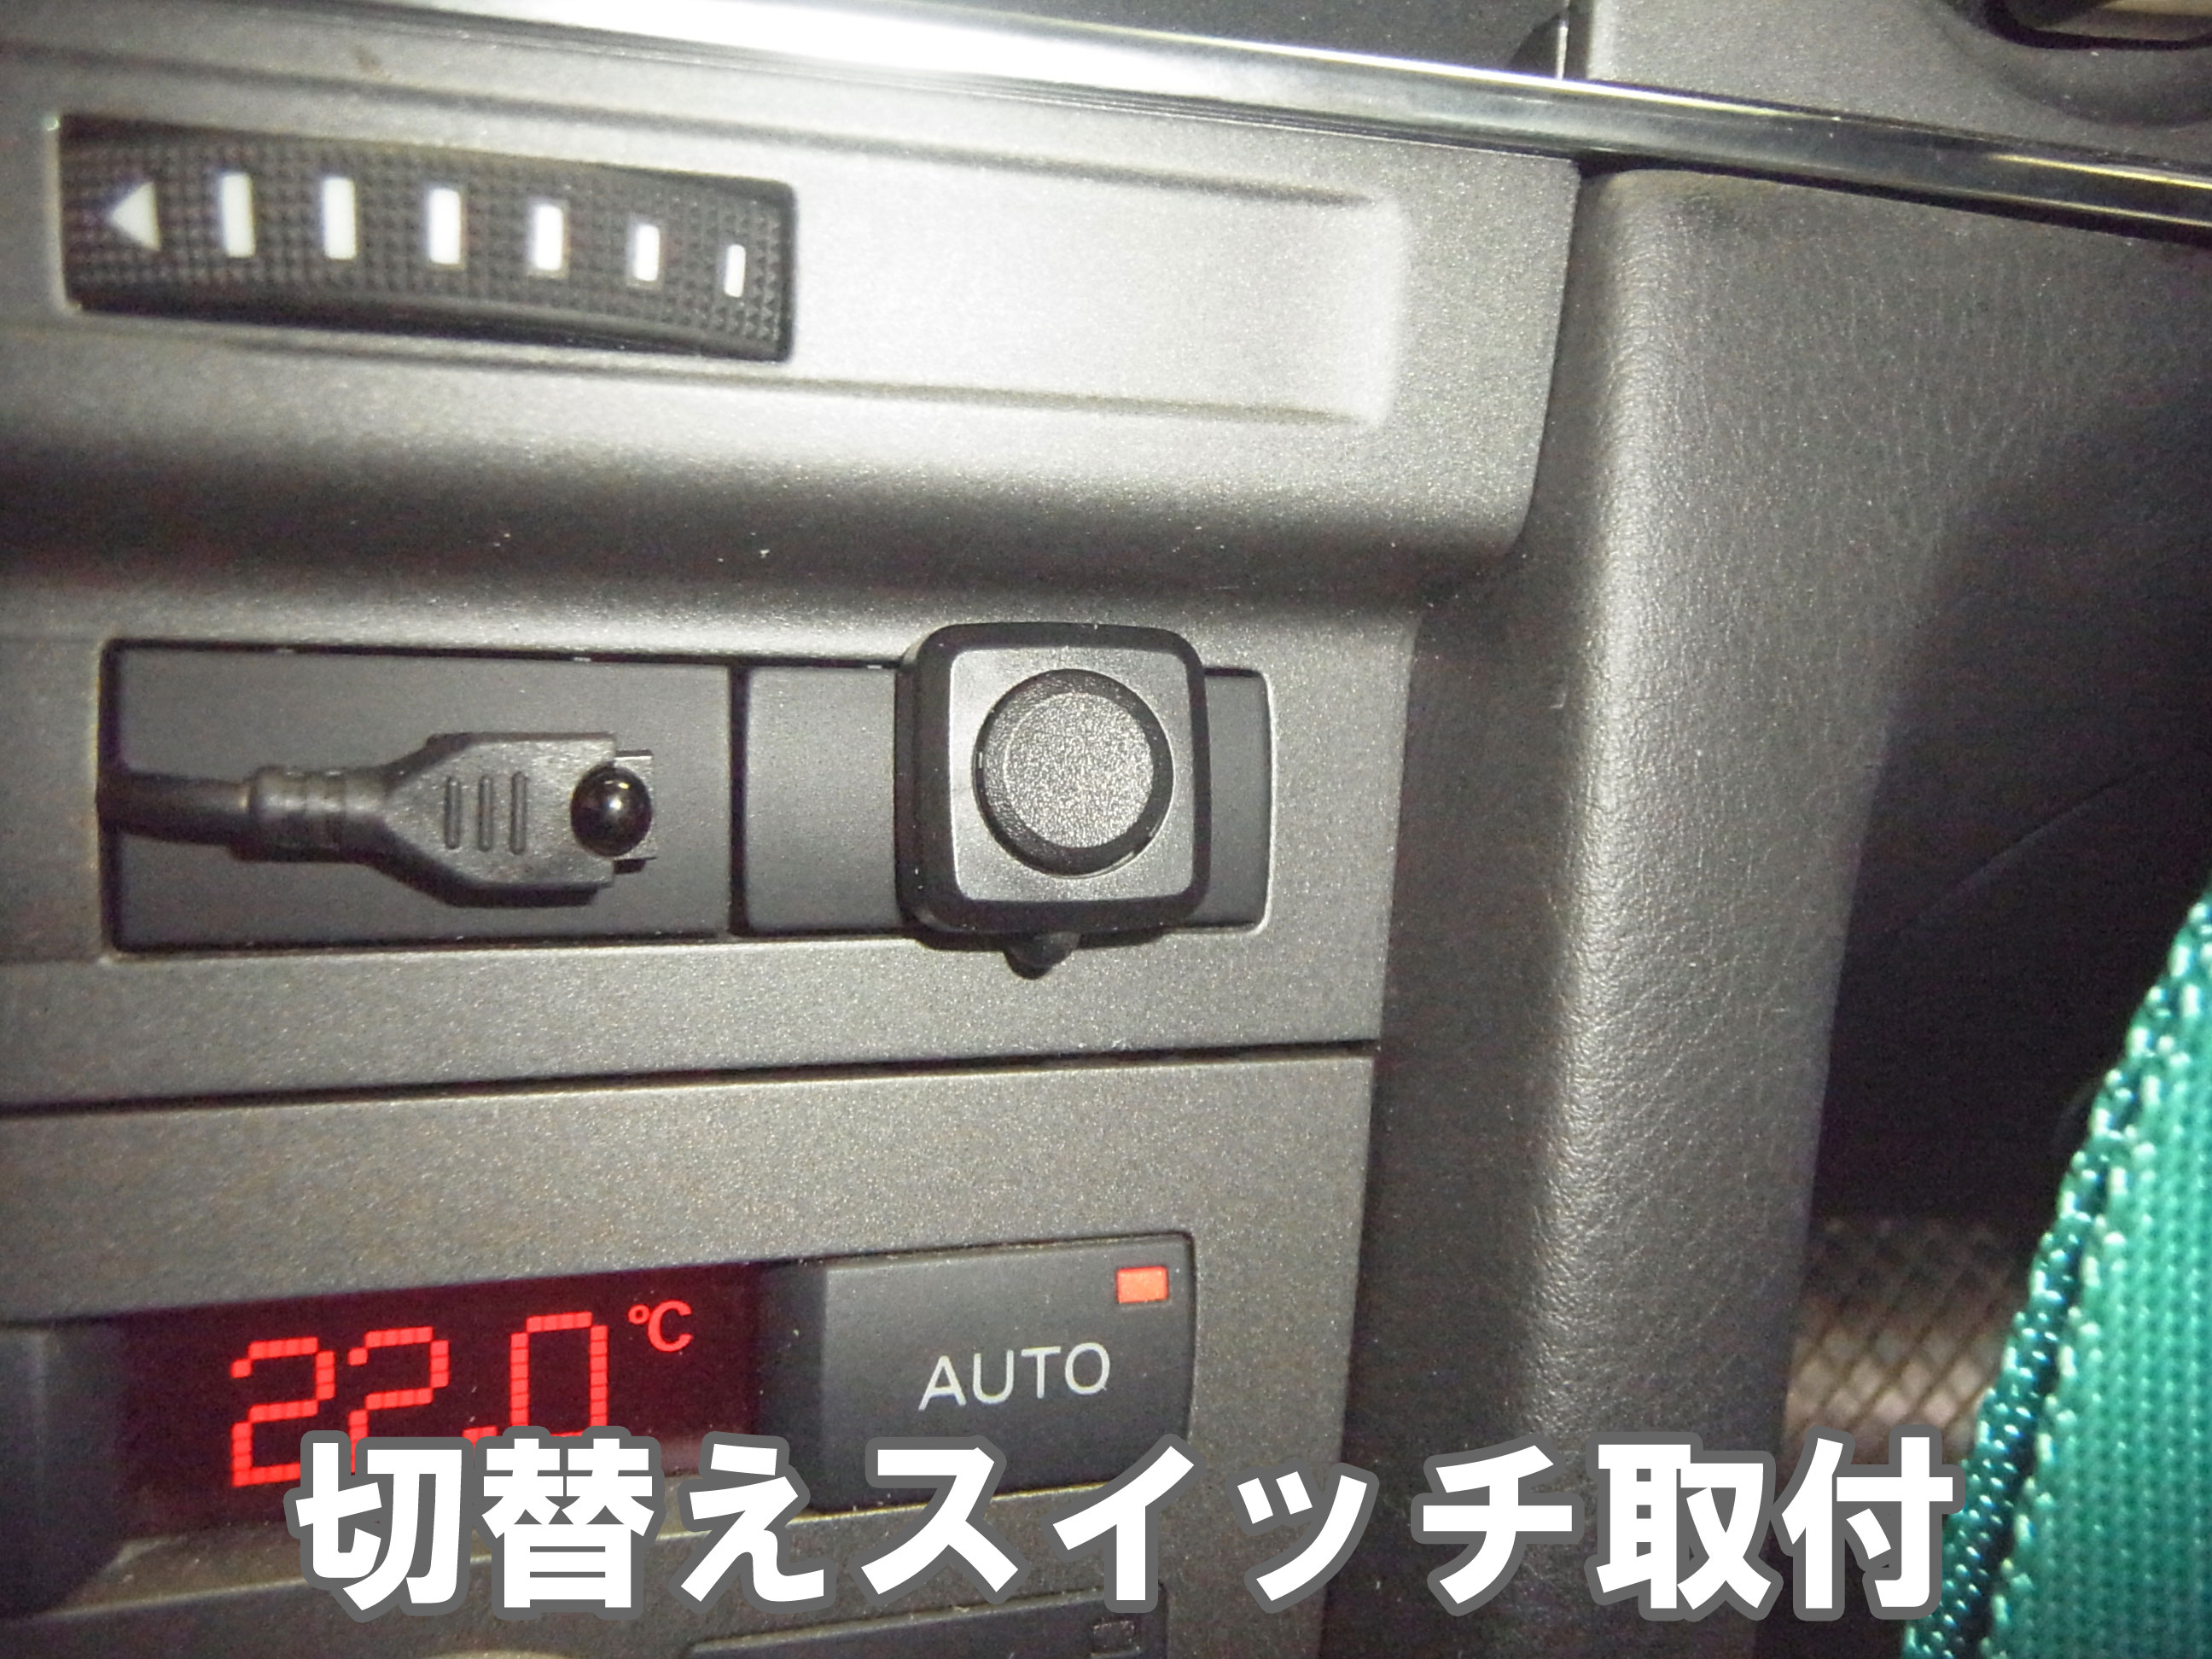 AUDI アウディ A6 4F C6 地デジ バックカメラ 取付 インターフェイス 